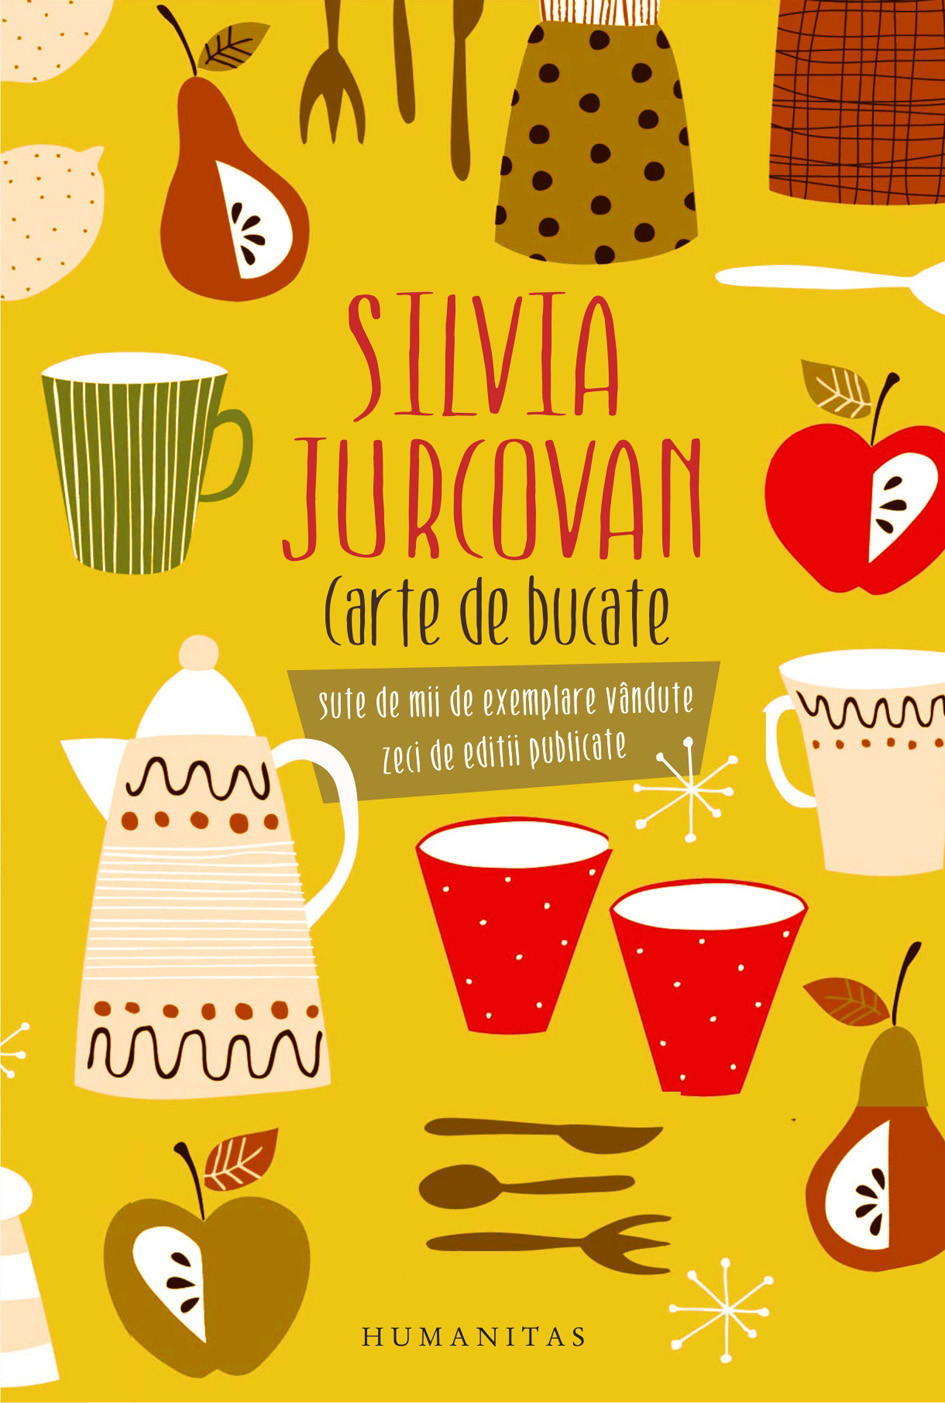 Carte de bucate | Silvia Jurcovan